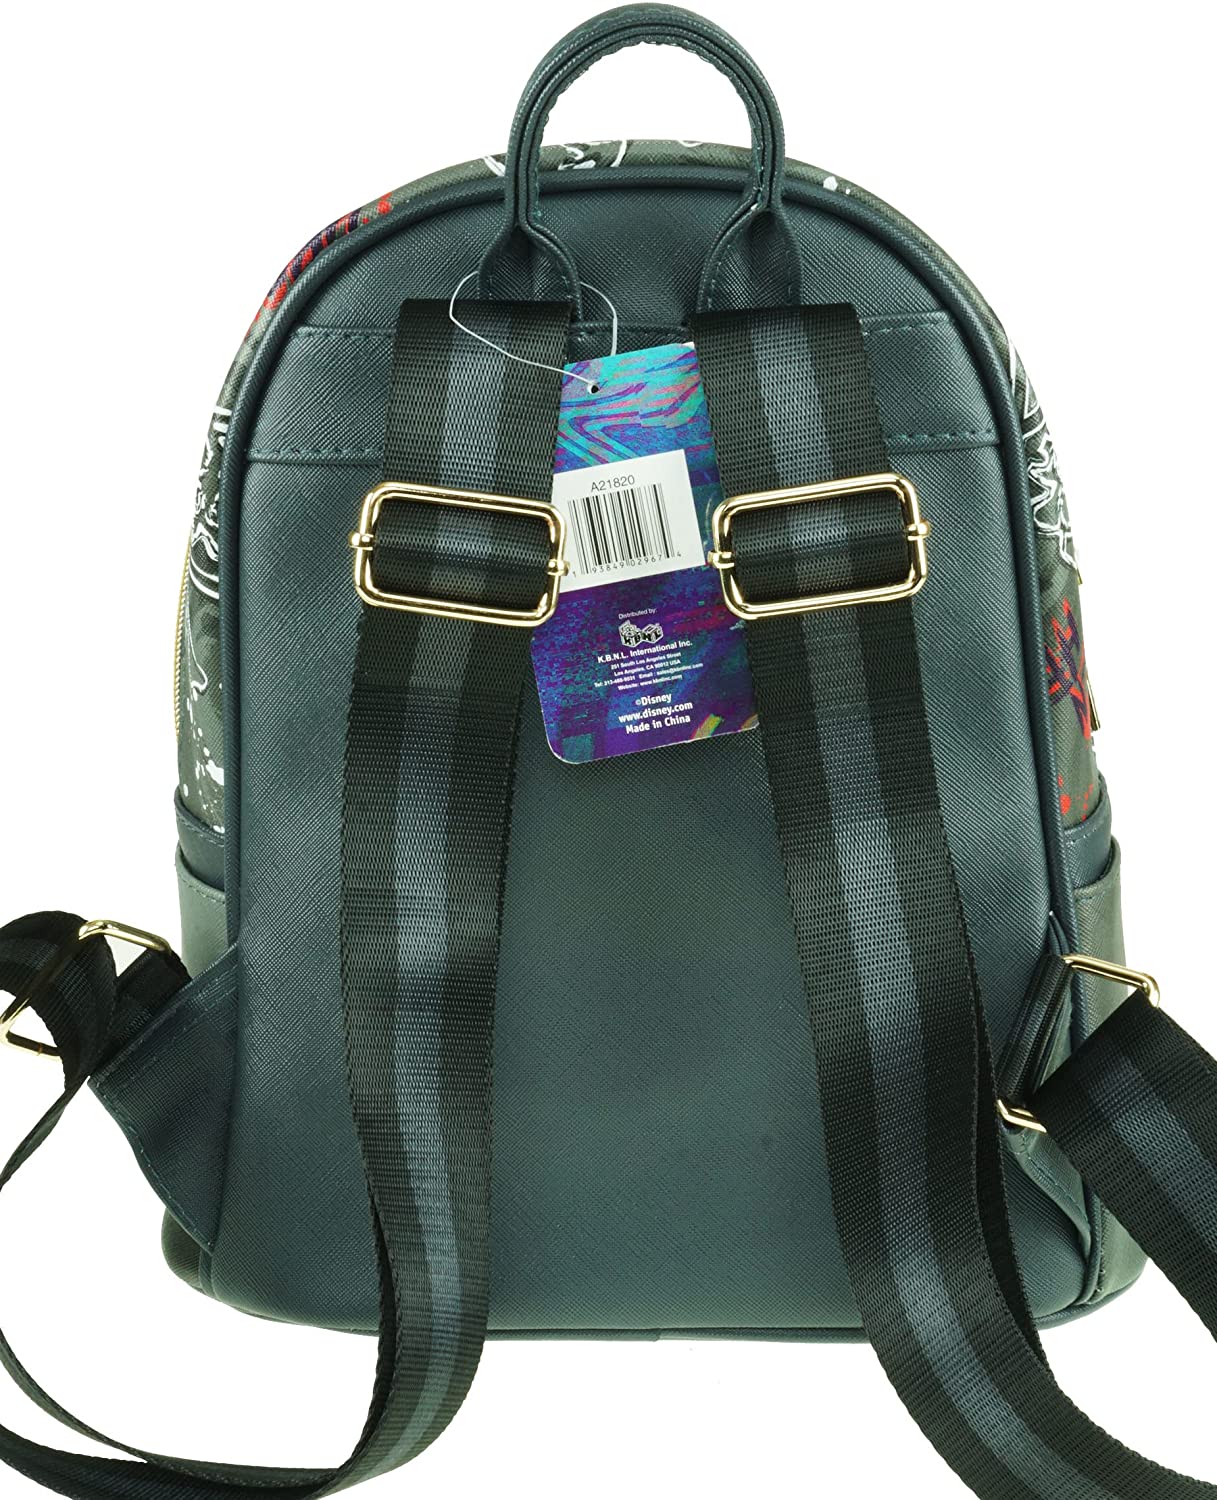 Villains - Cruella DeVil 11" Vegan Leather Mini Backpack - A21820 - GTE Zone